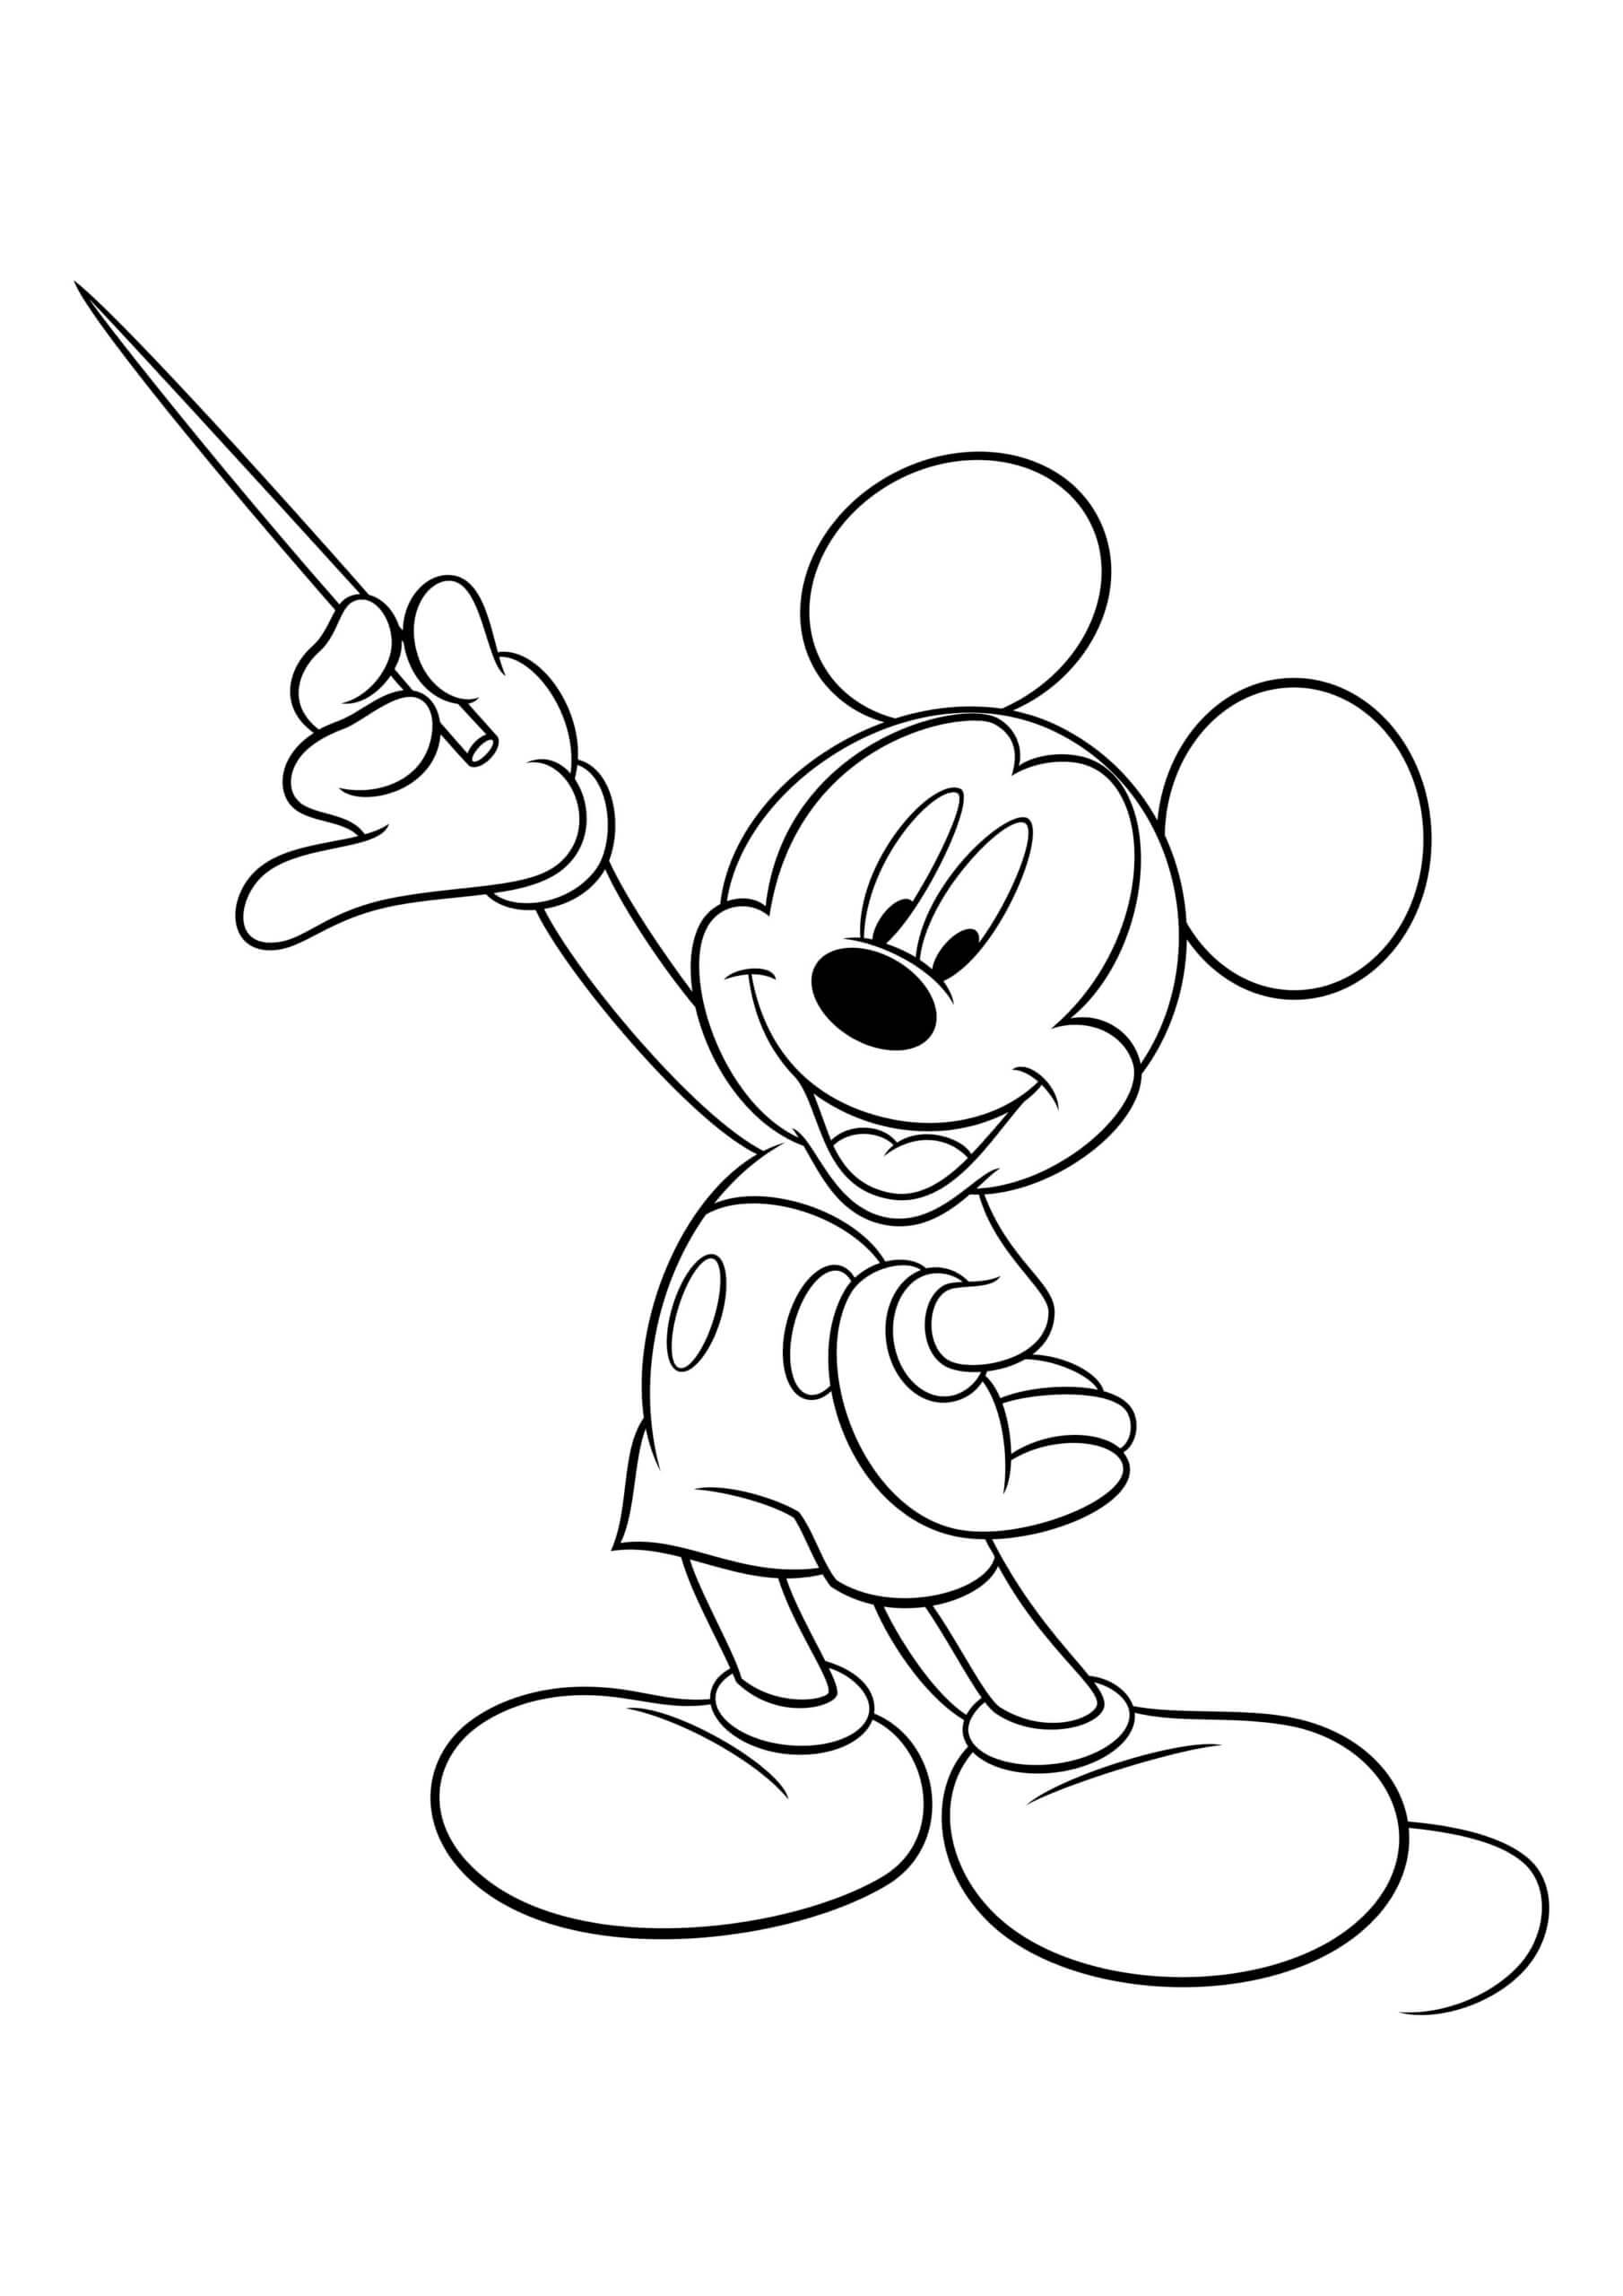 Desenhos de Mickey Mouse Segurando a Varinha Mágica para colorir